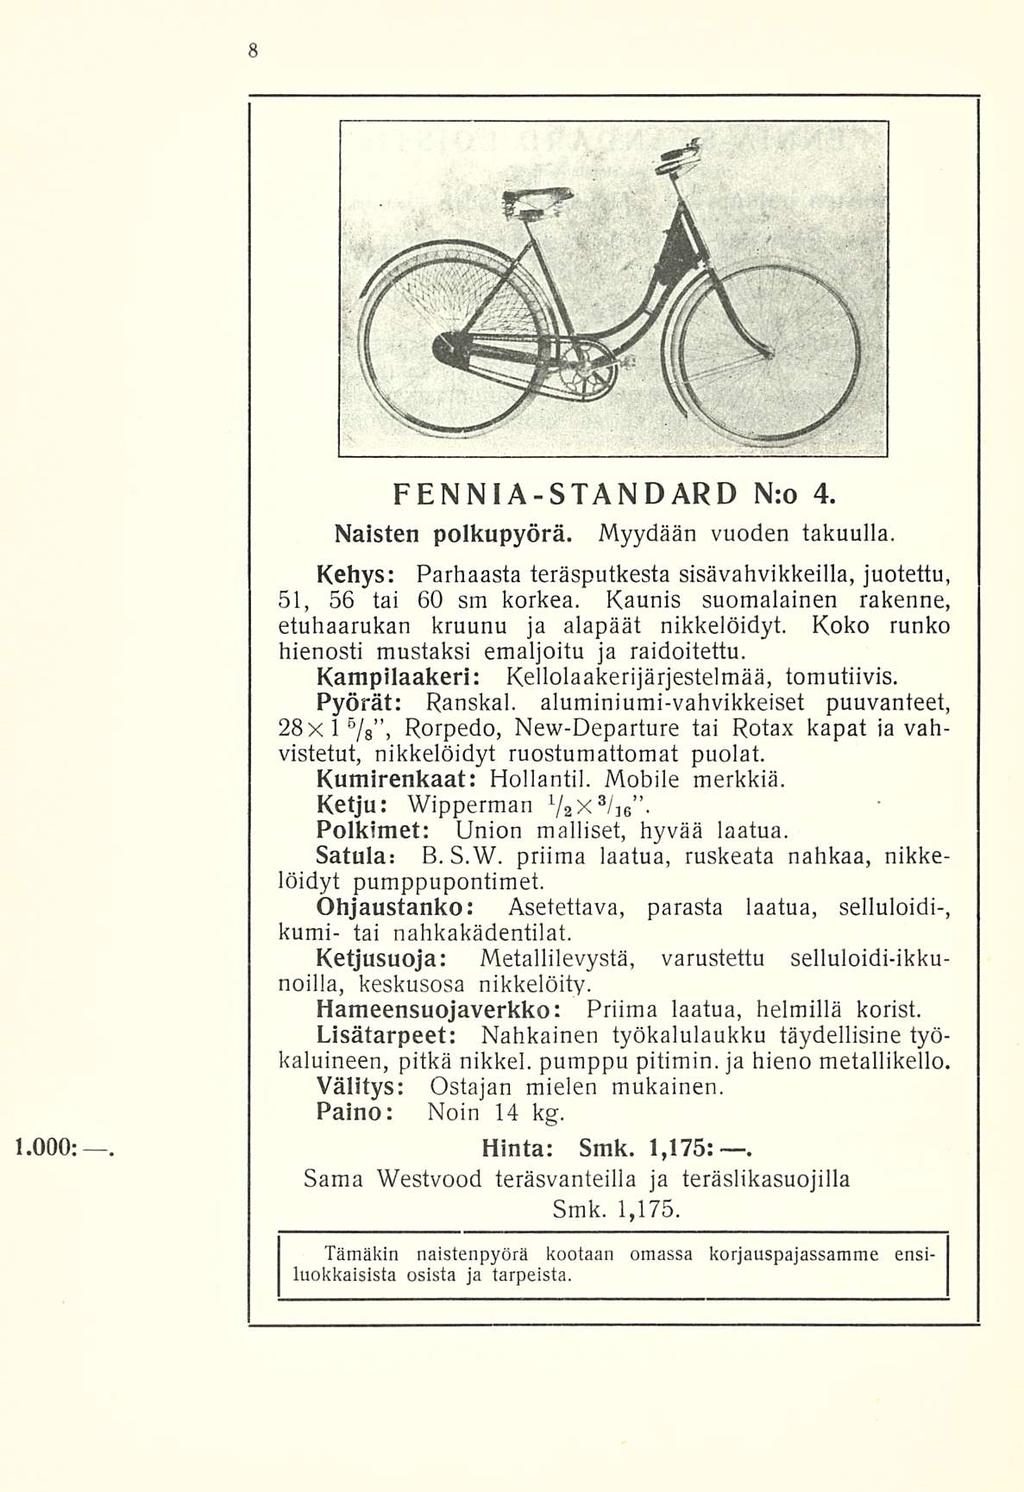 1.000:. FENNIA-STANDARD Nro 4. Naisten polkupyörä. Myydään vuoden takuulla. Kehys: Parhaasta teräsputkesta sisävahvikkeilla, juotettu, 51, 56 tai 60 sm korkea.